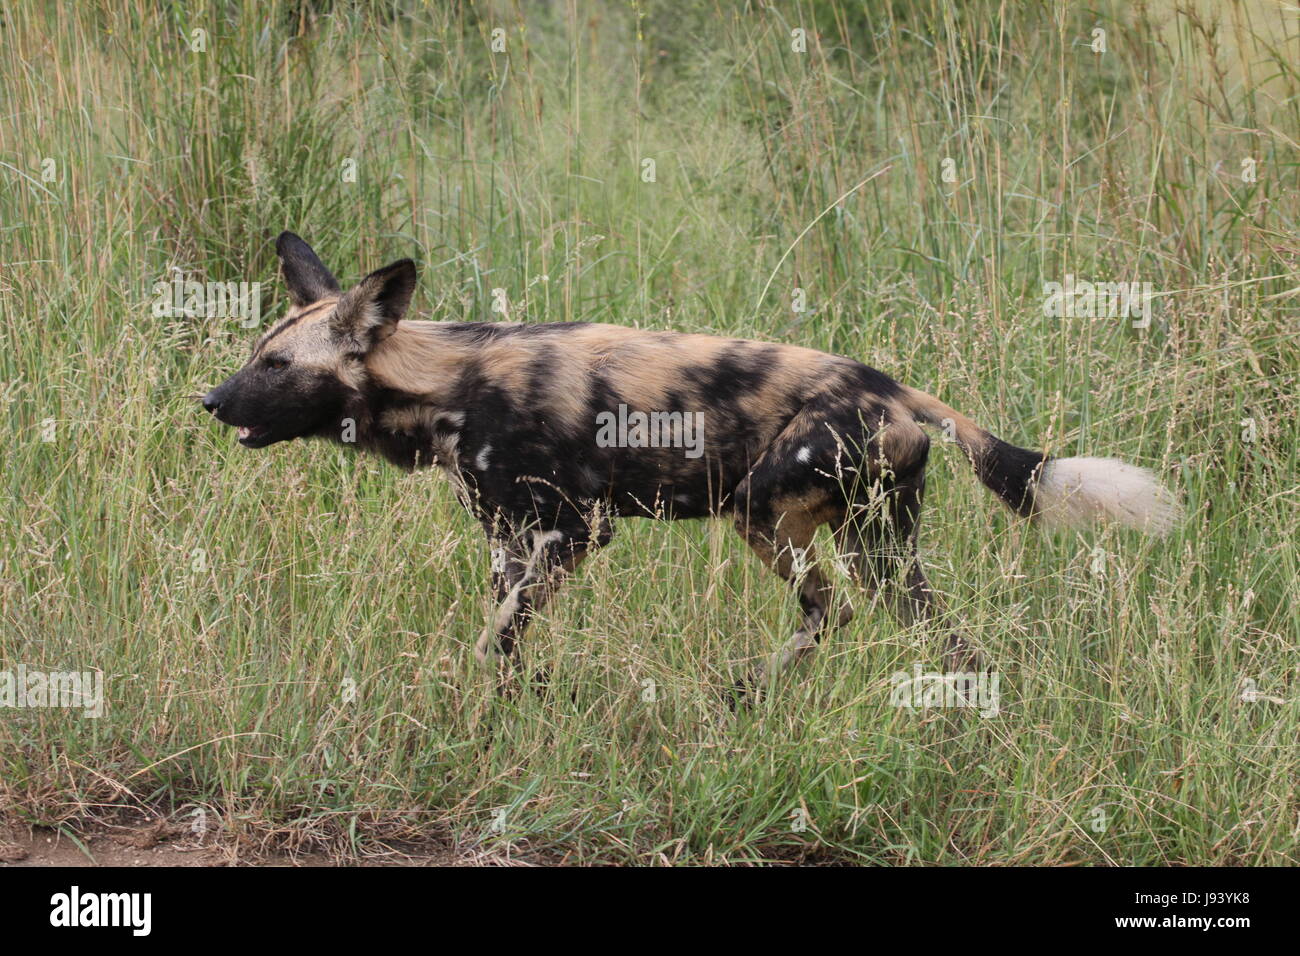 south africa, threatens, south africa, threatens, afrikanischer wildhund, Stock Photo